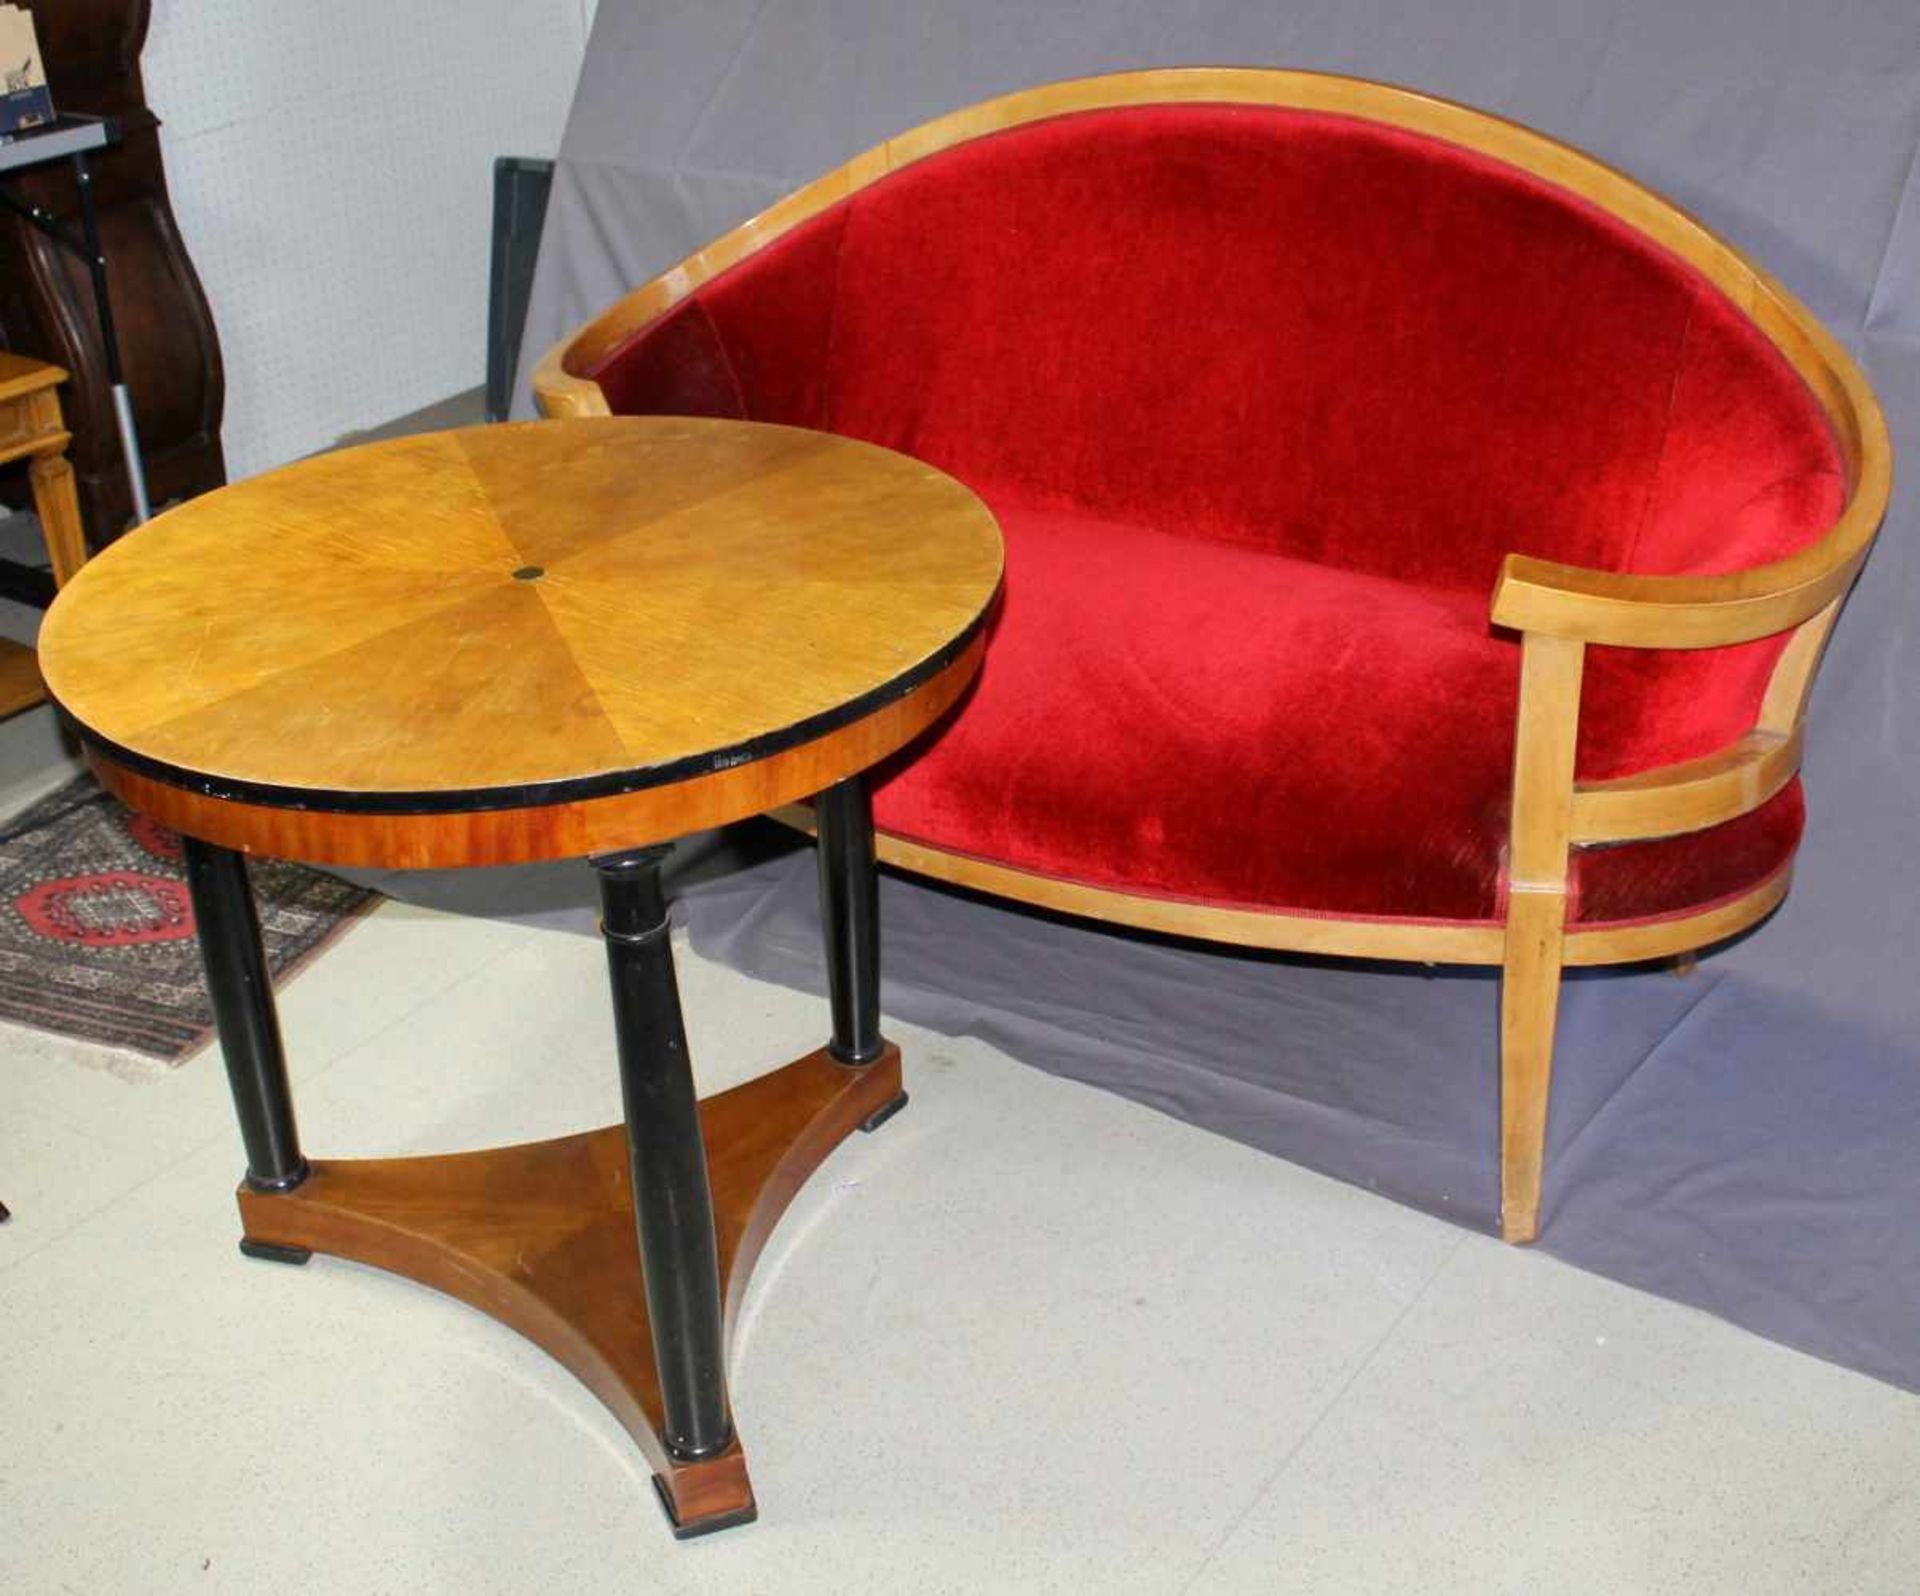 1 kleines Sofa, rot gepolstert, ca. 99 x 158cm x 57cm und 1 kleiner runder Tisch, auf einem